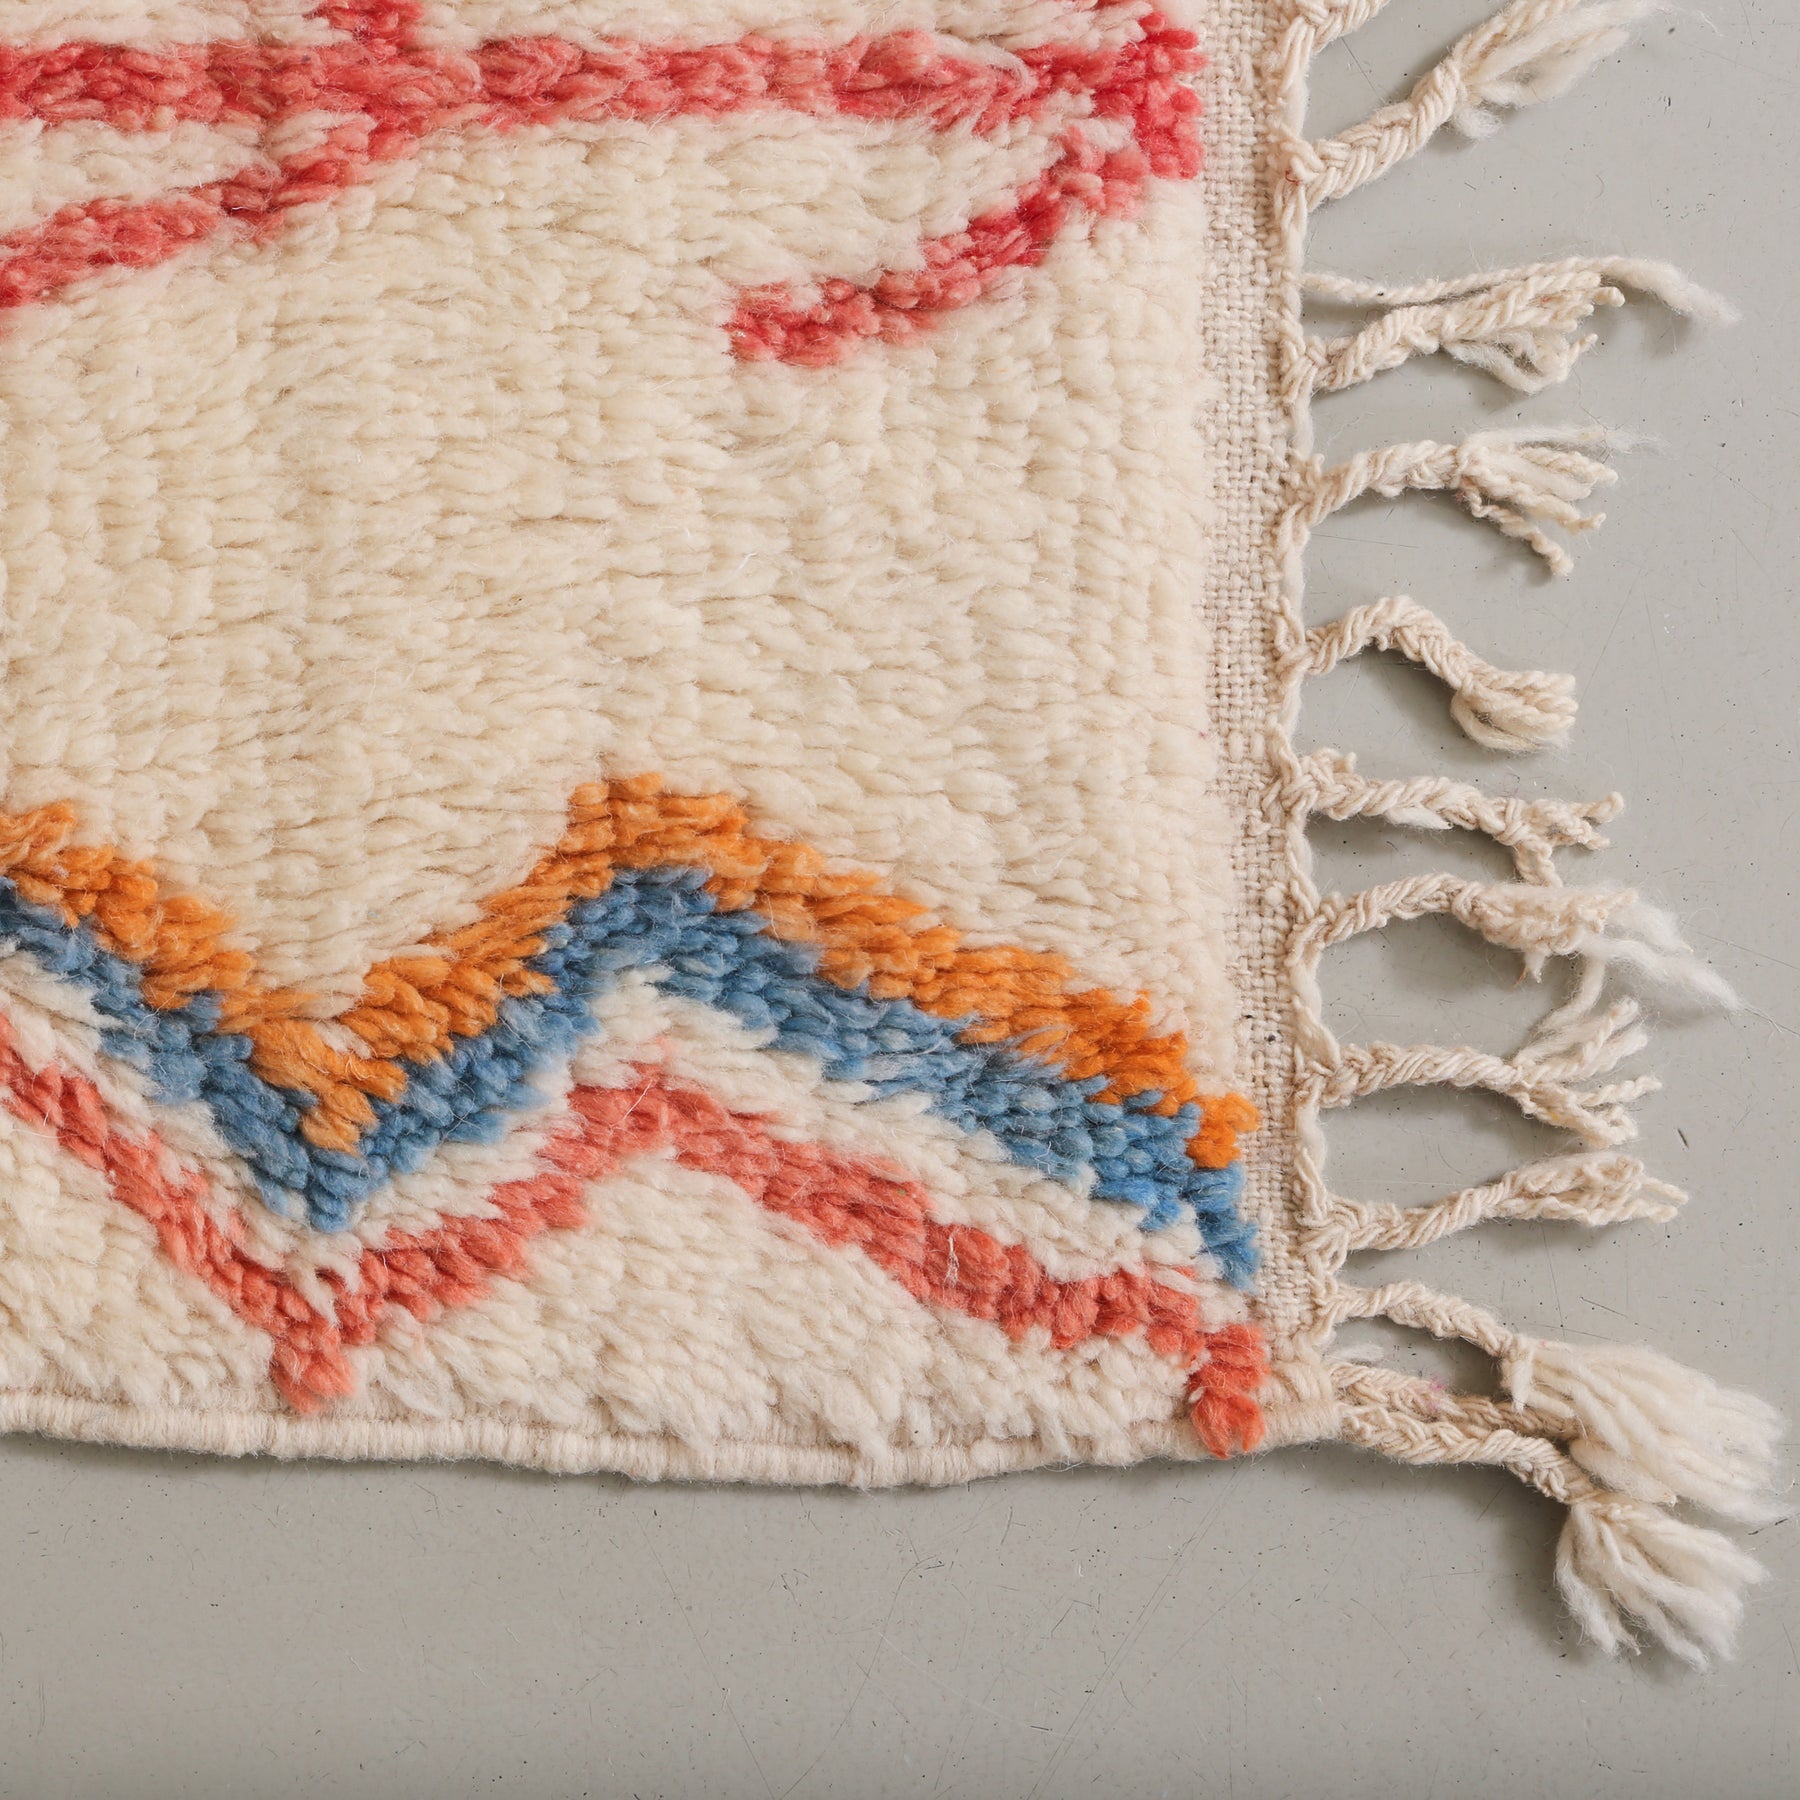 dettaglio dell'angolo di un tappeto. si possono vedere delle linee spezzate affiancate di diversi colori e la frangia con corte trecce bianche